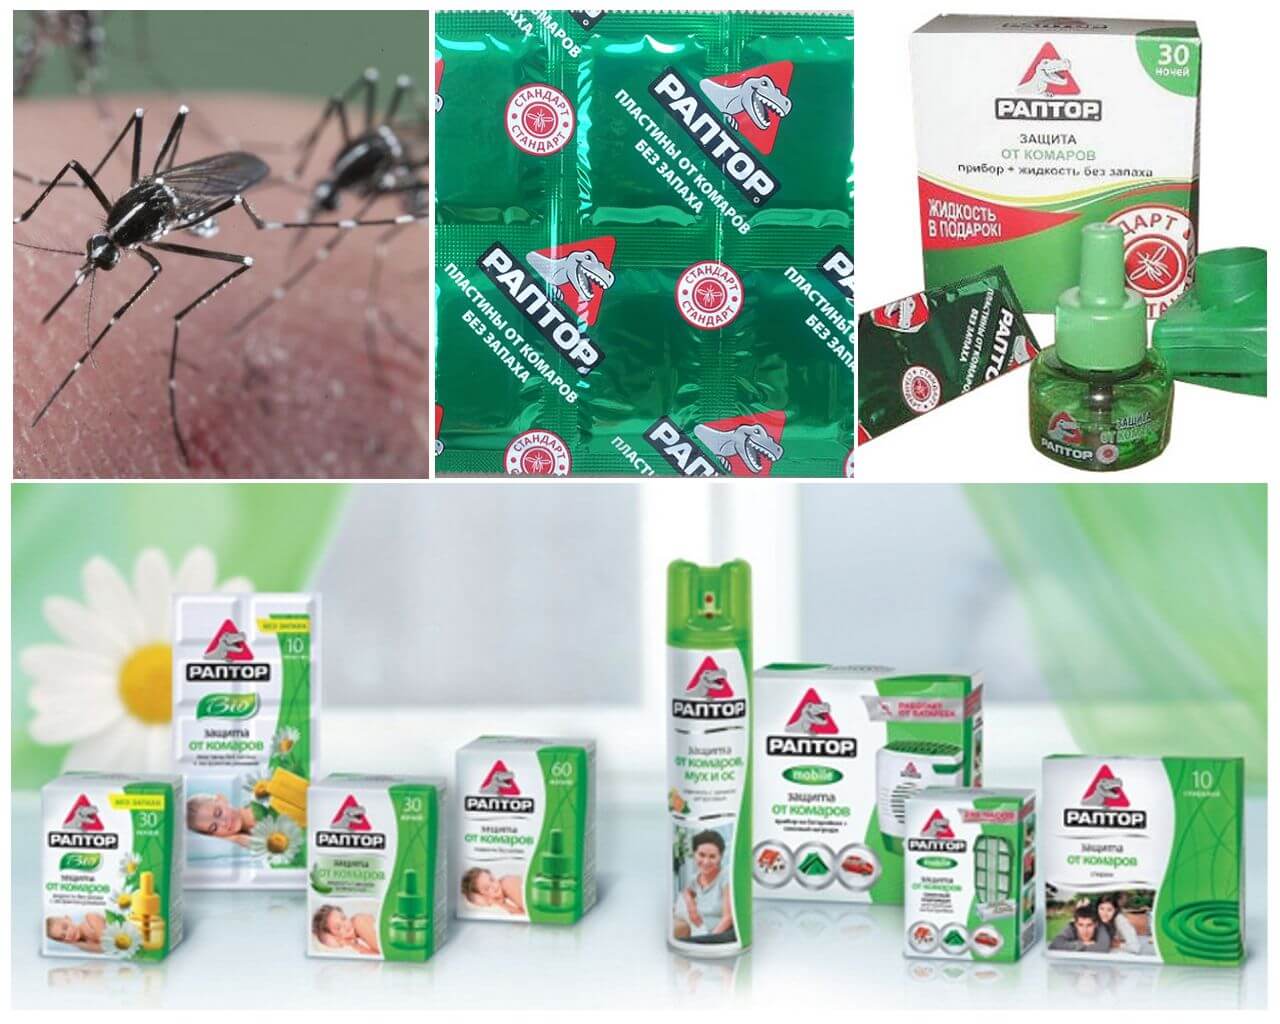 Prostriedky proti komárom a kliešťom